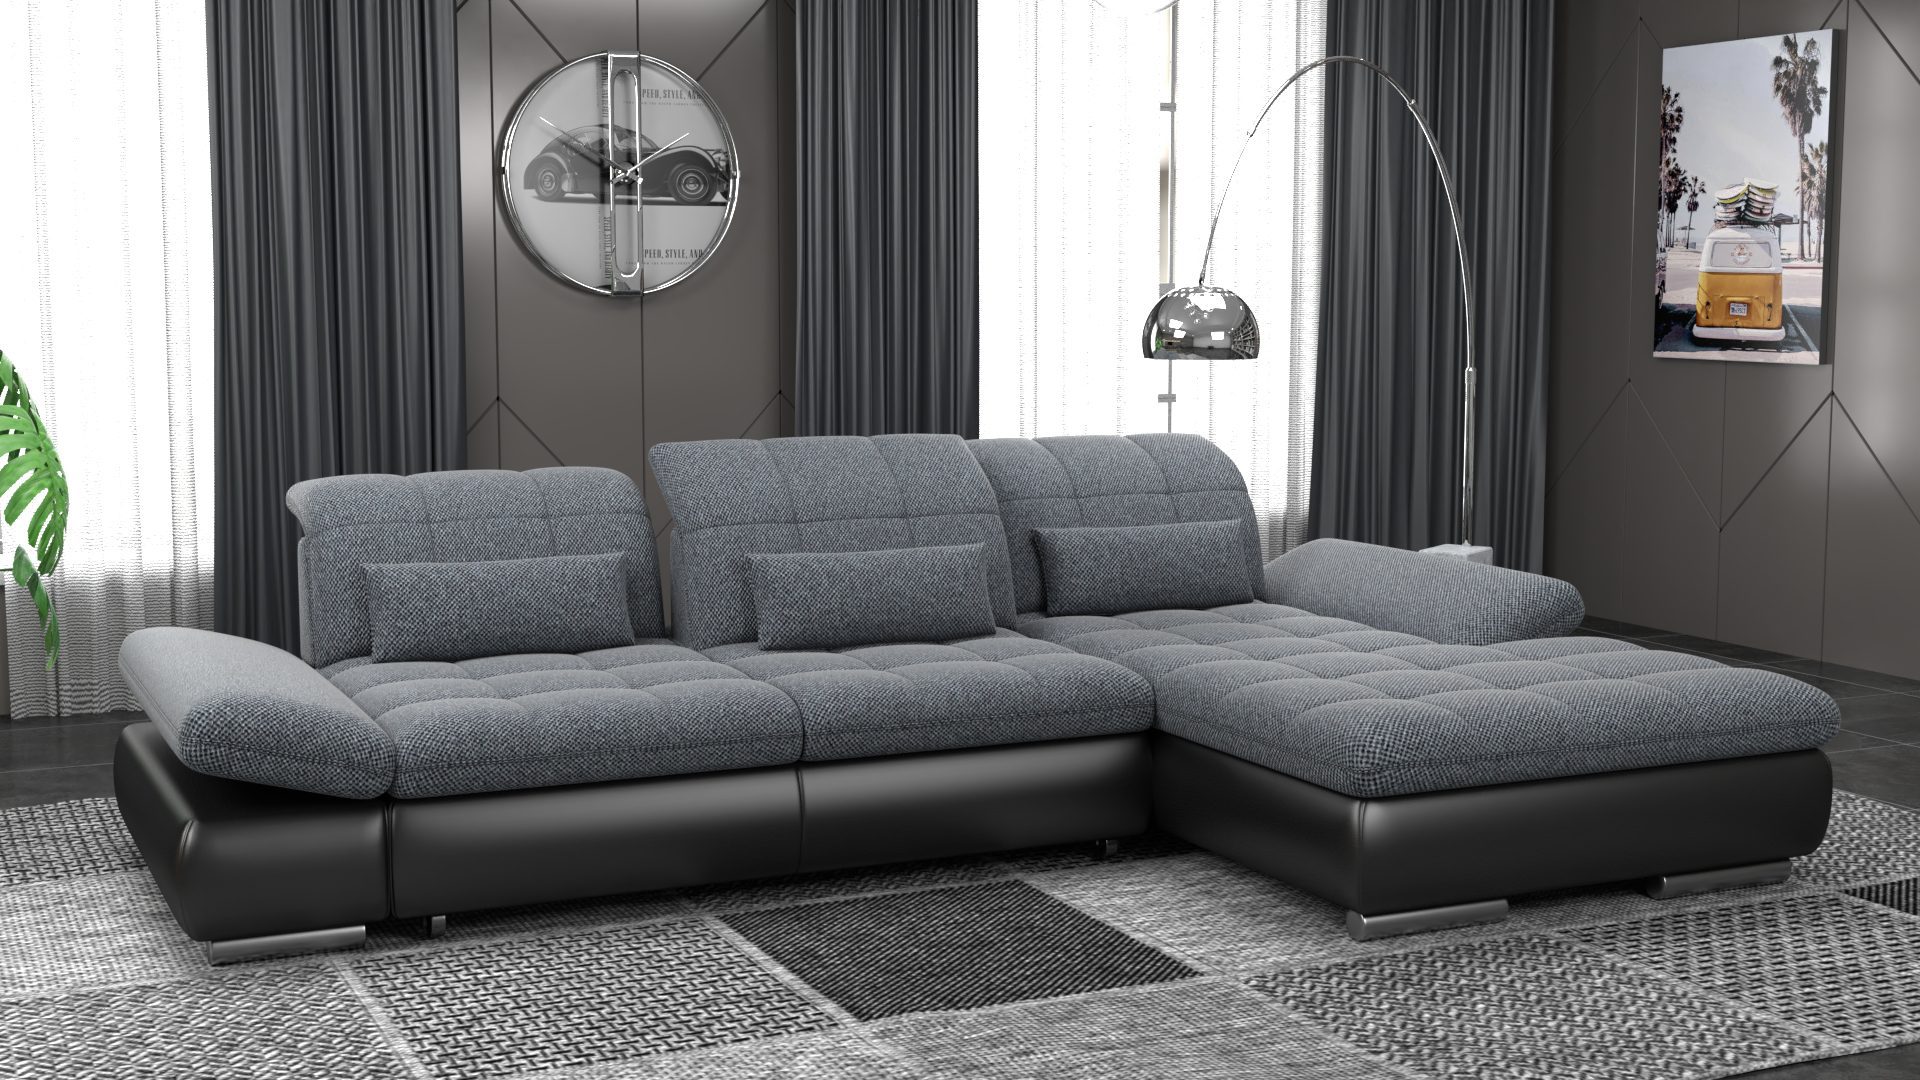 ספה עם שזלונג בעיצוב מודרני 